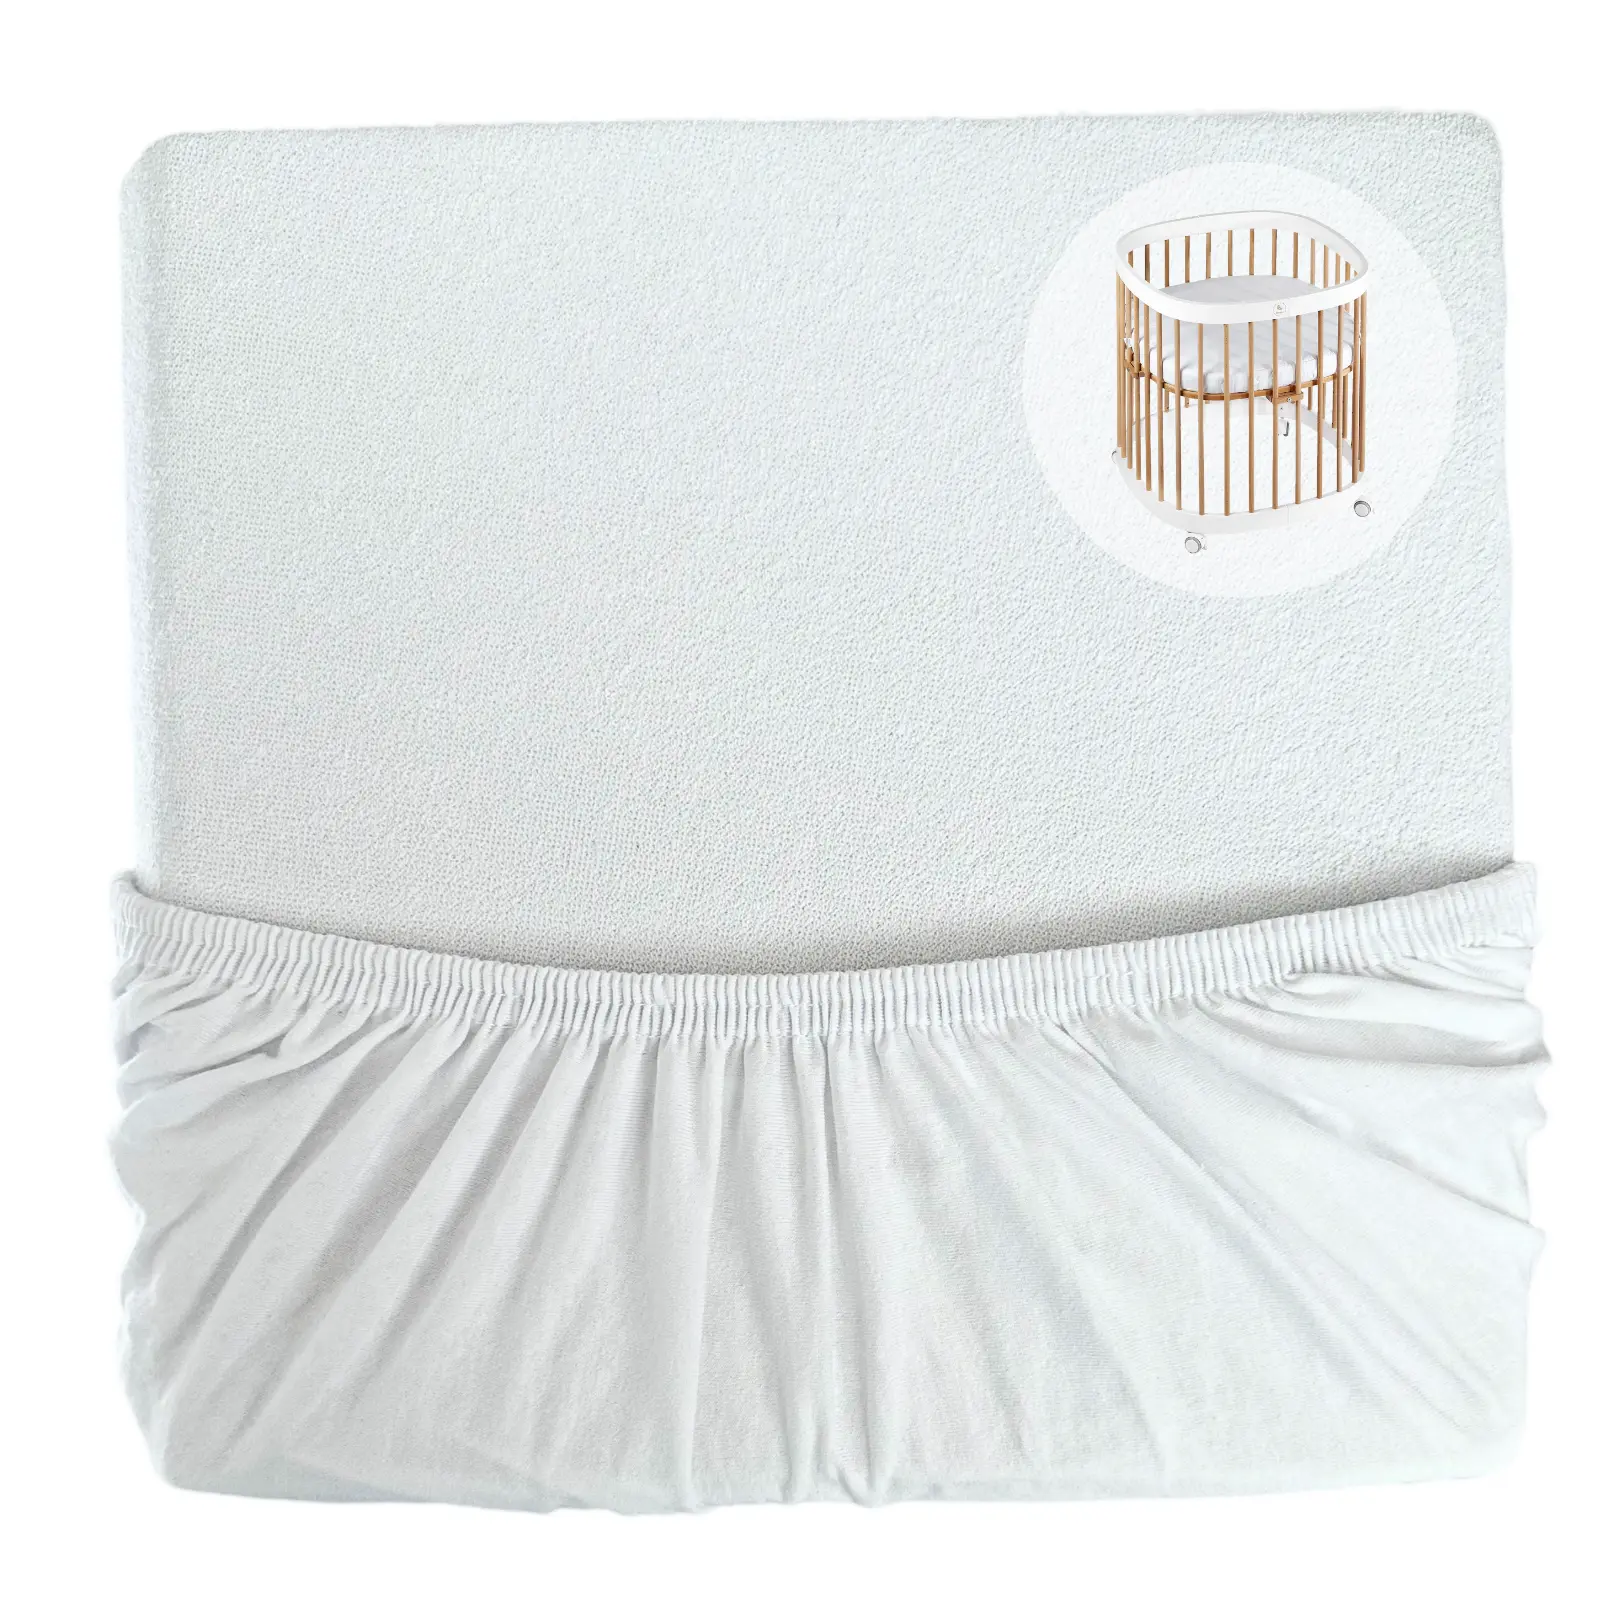 Protezione per materasso - protezione dall'umidità - MINI - 70x70